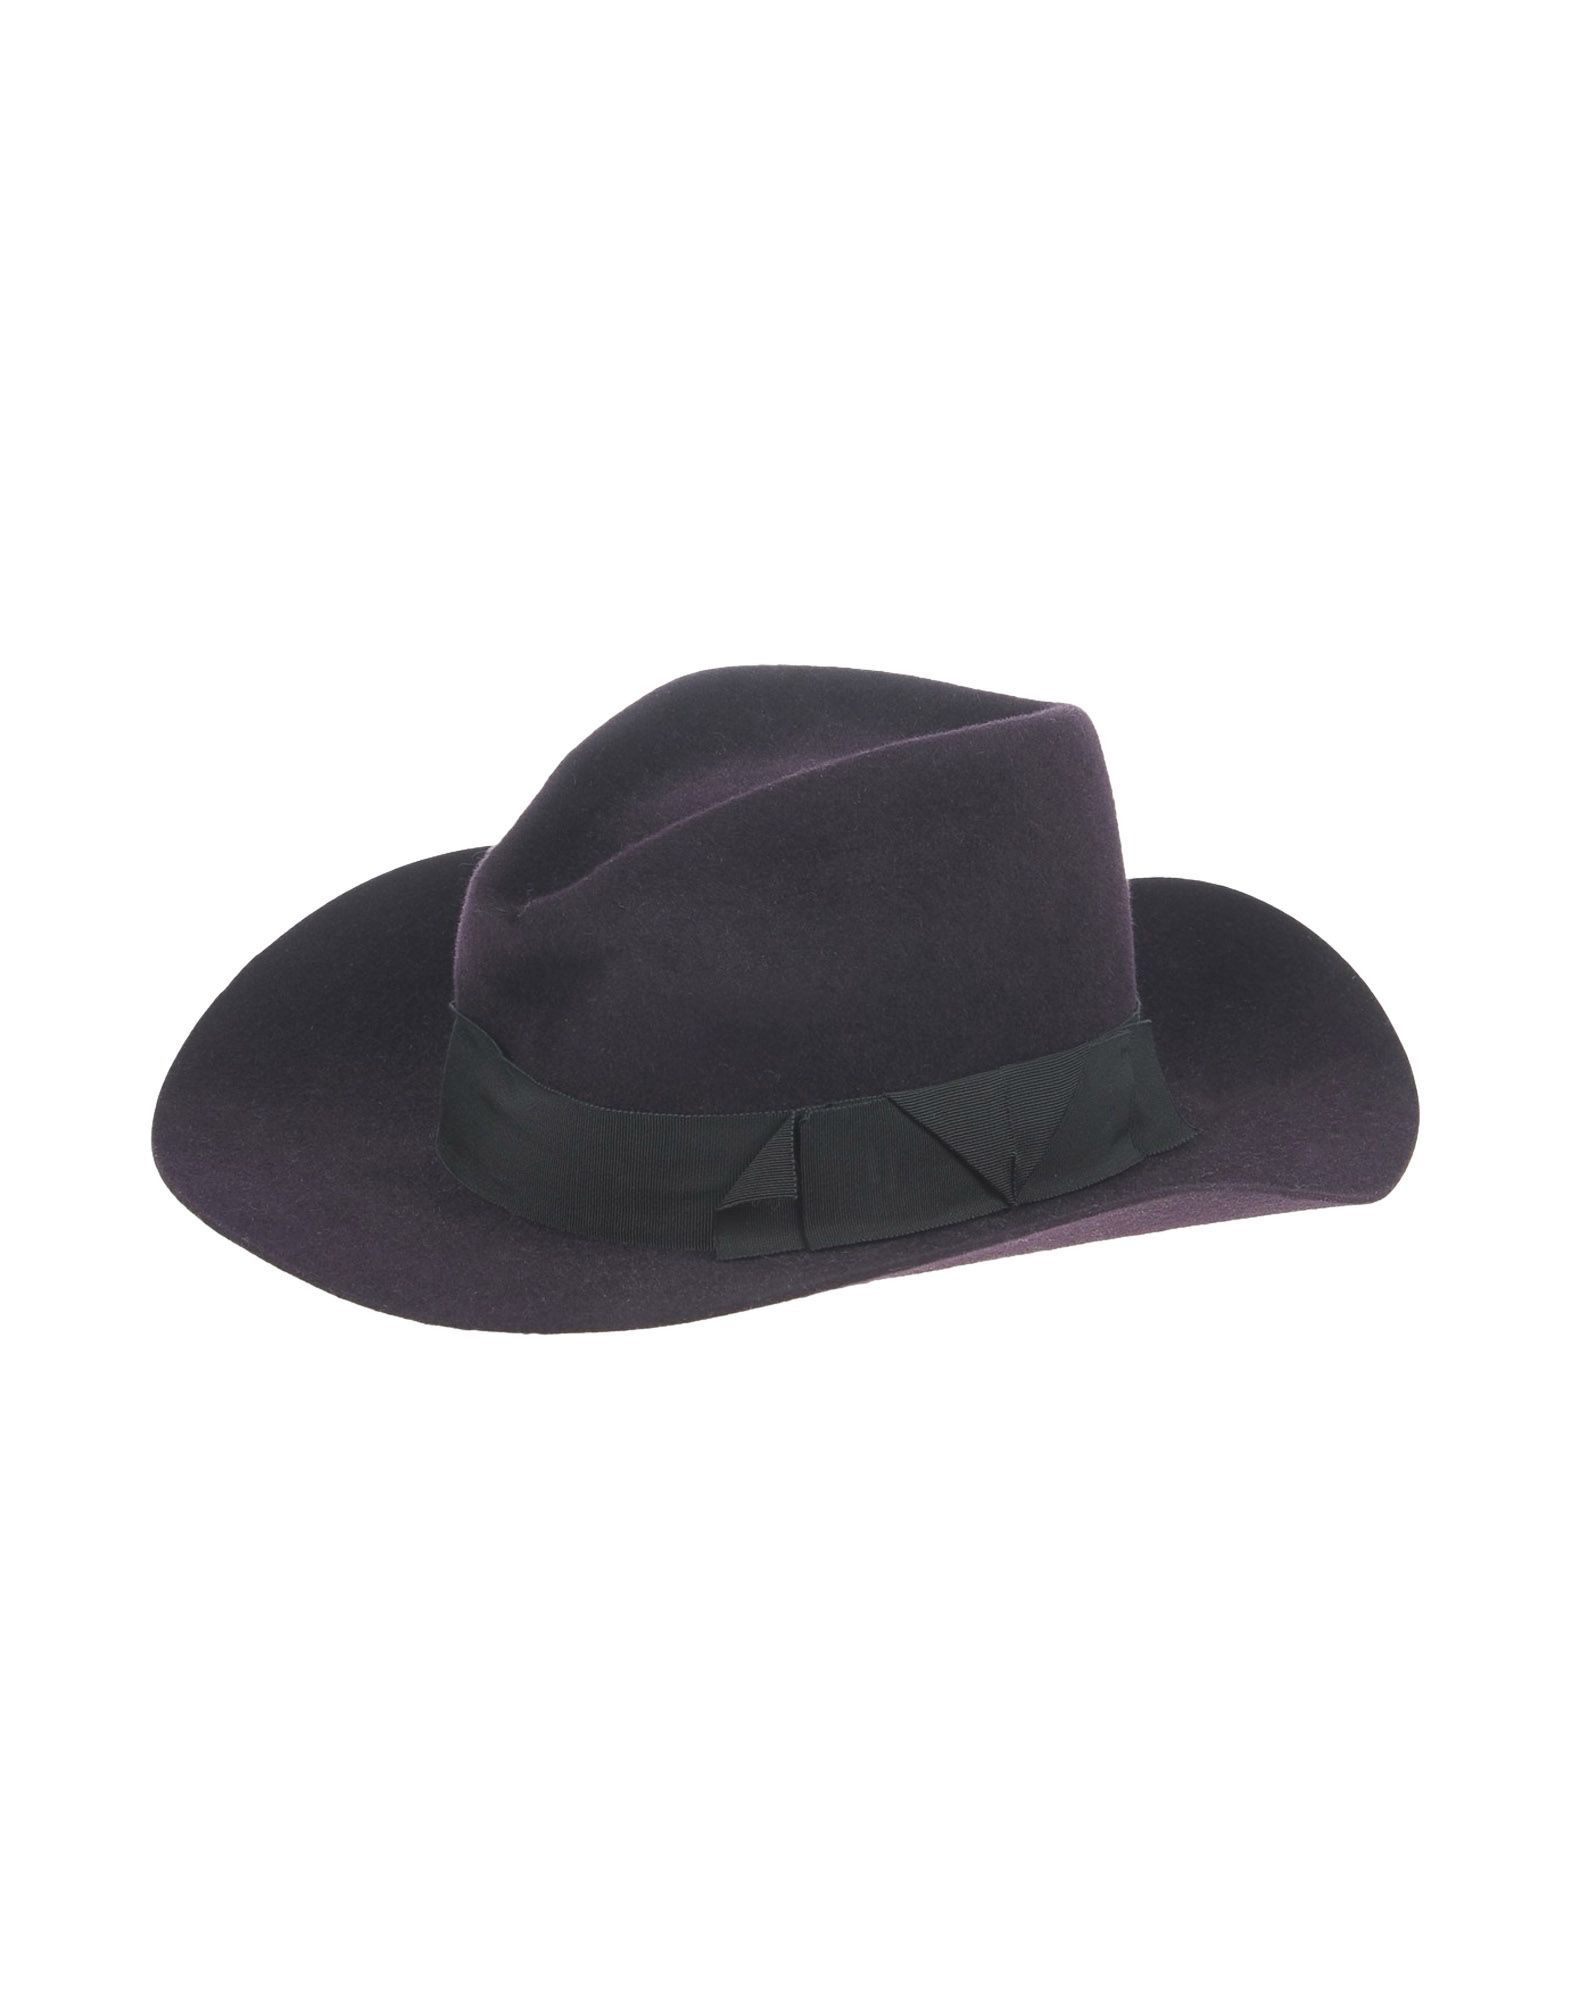 《送料無料》GLADYS TAMEZ レディース 帽子 ディープパープル M 紡績繊維